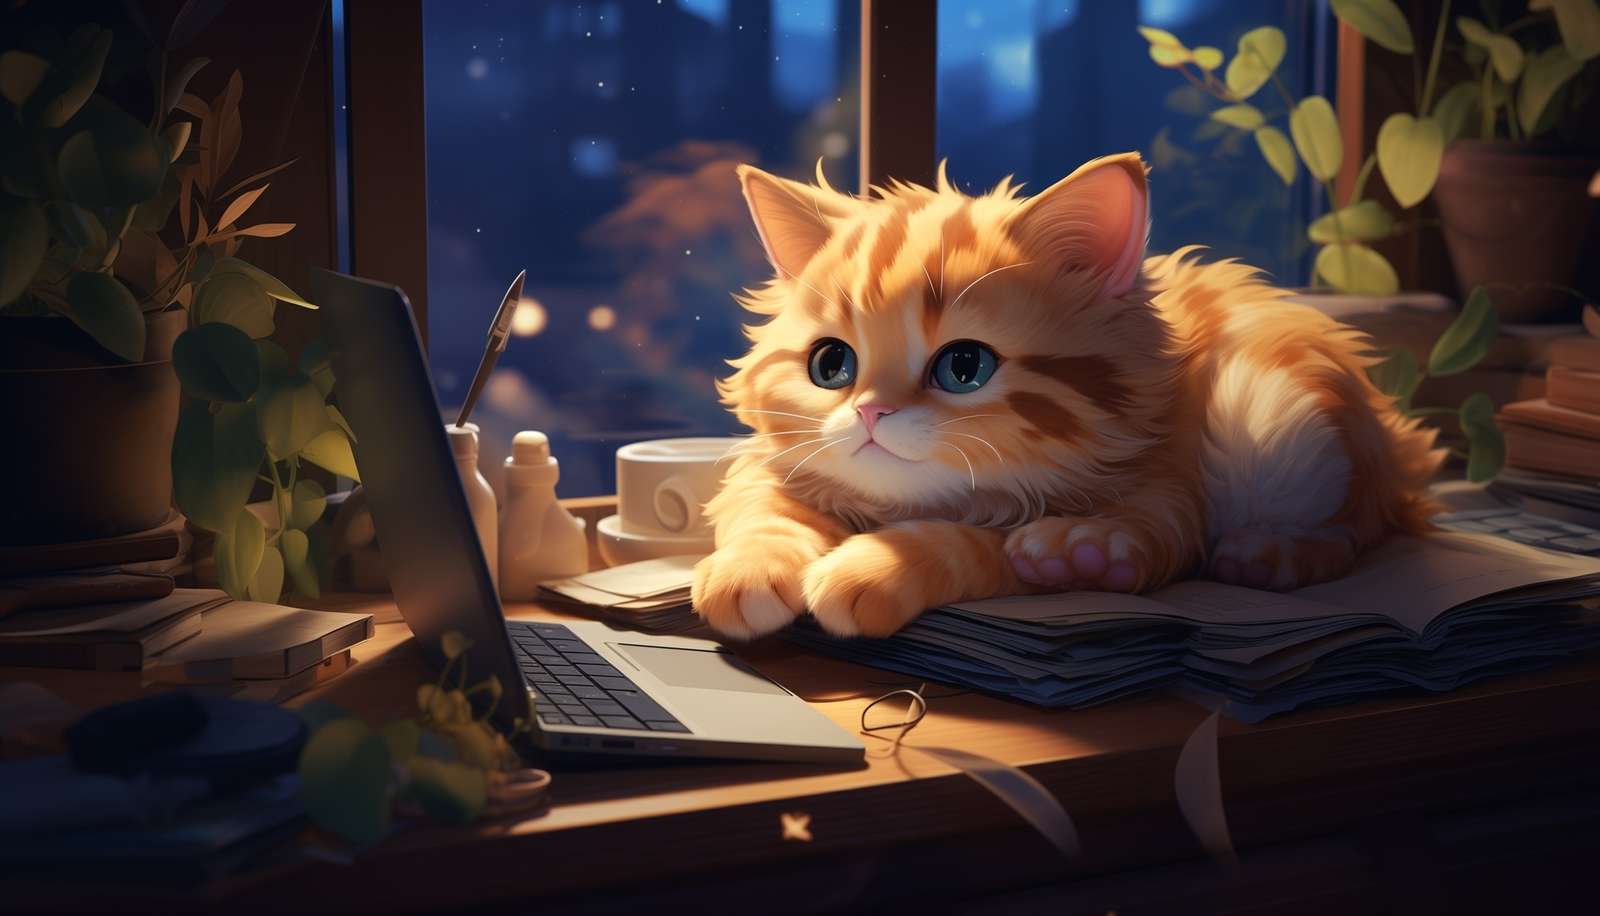 Rudy kotek leżący na książce przy laptopie puzzle online